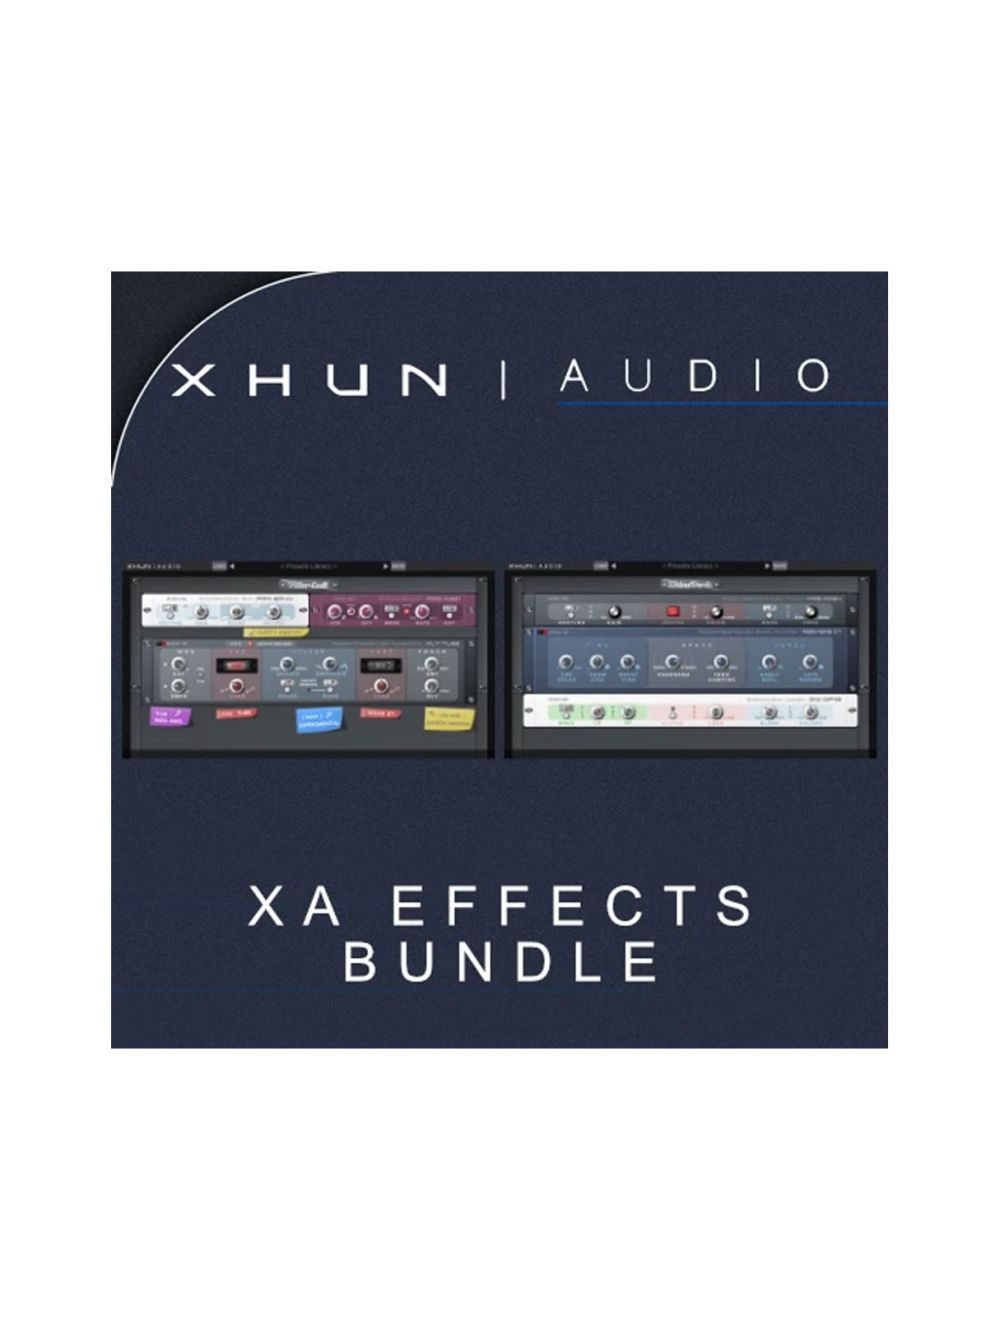 XHUN Audio Effects Bundle